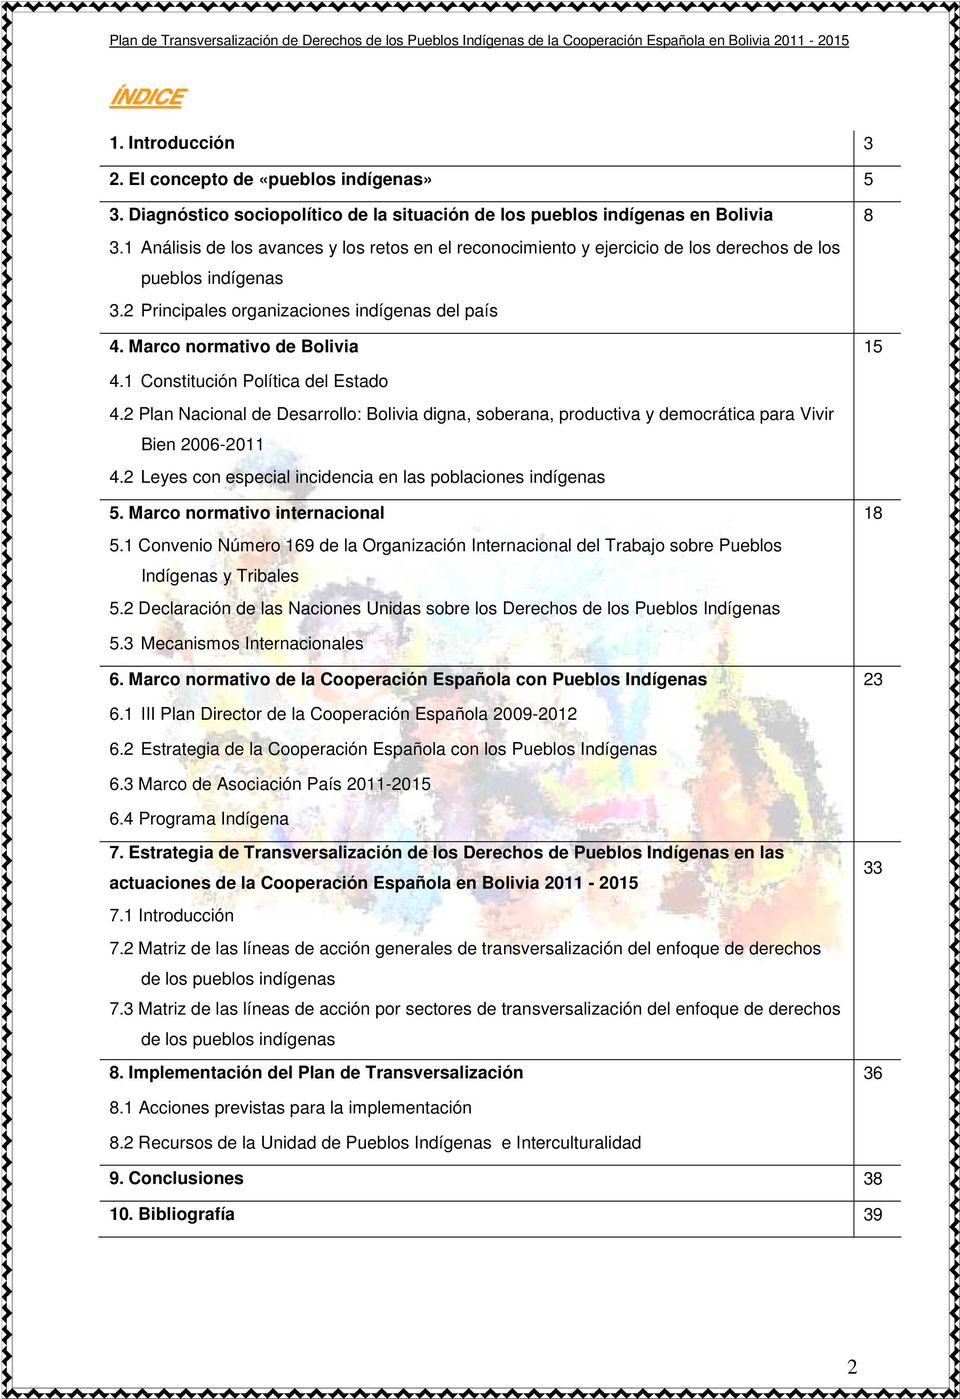 1 Constitución Política del Estado 4.2 Plan Nacional de Desarrollo: Bolivia digna, soberana, productiva y democrática para Vivir Bien 2006-2011 4.